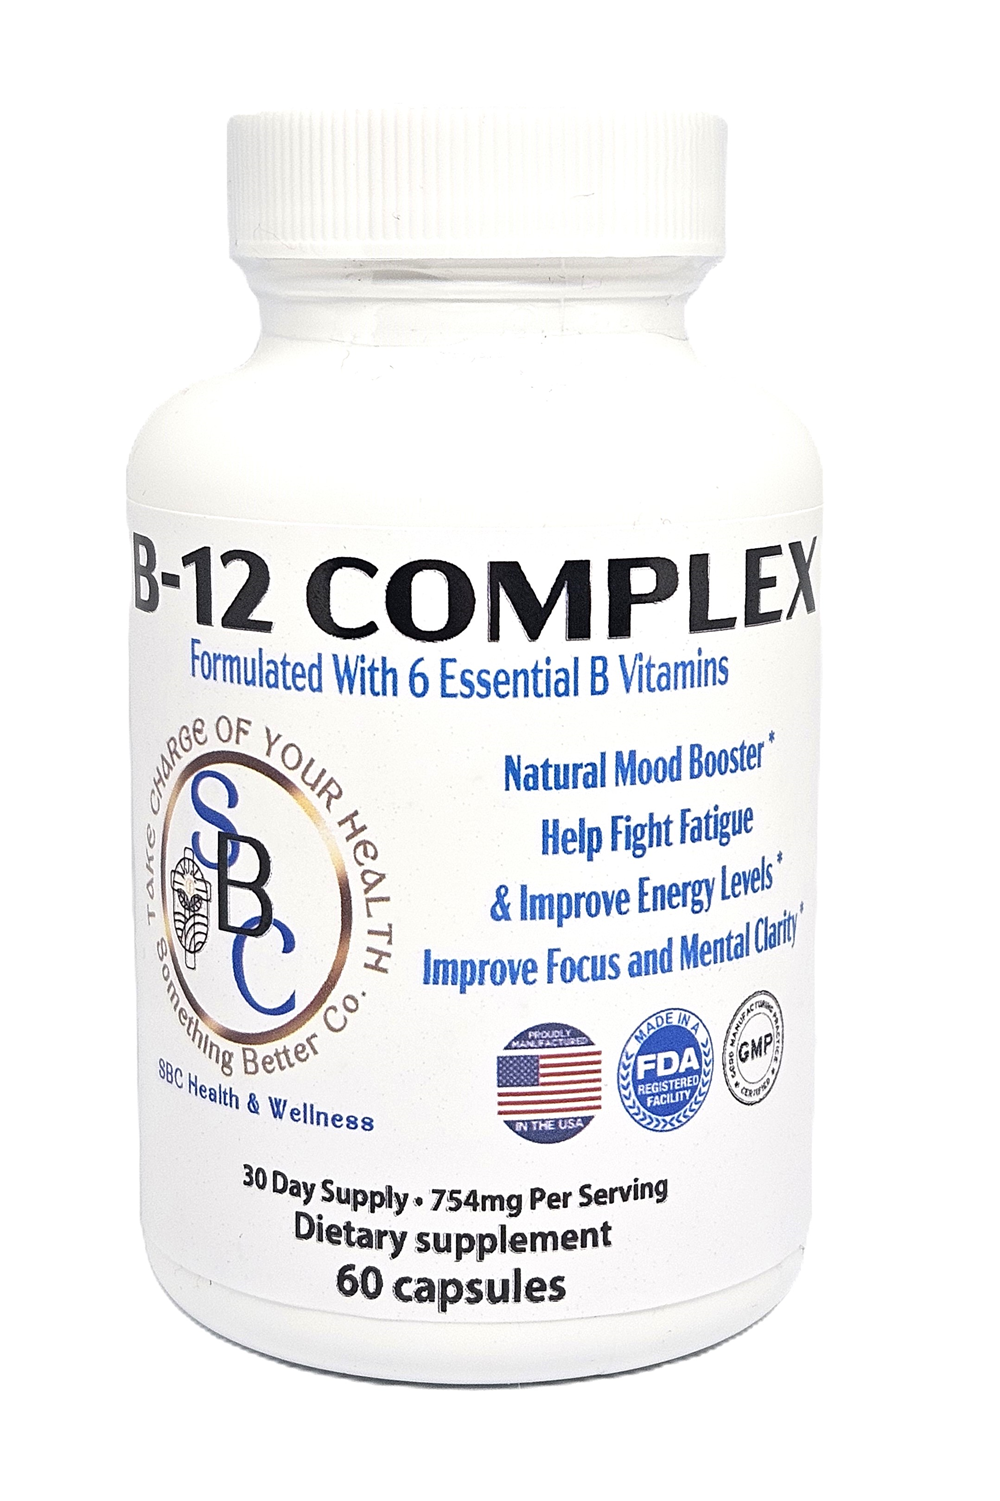 B-12 Vitamin Complex